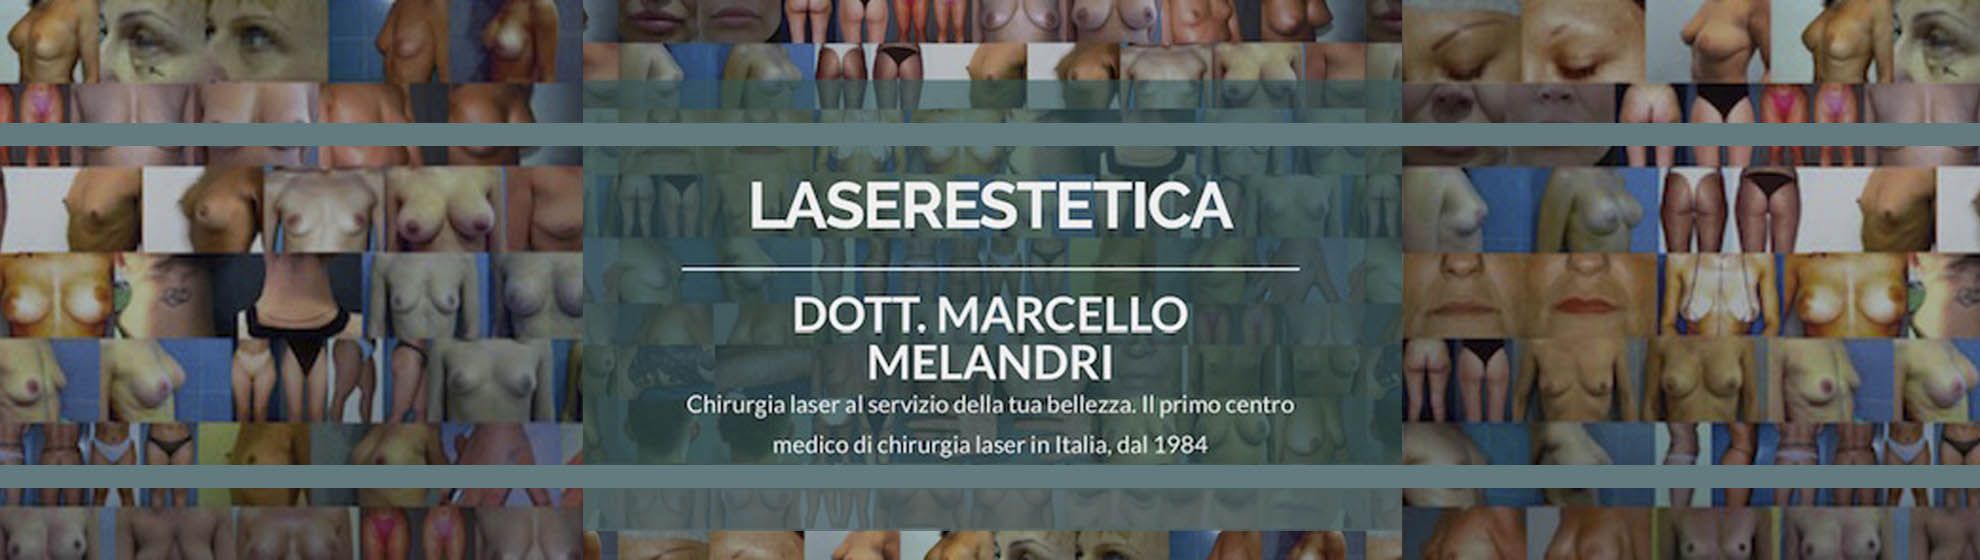 Dott. Marcello Melandri